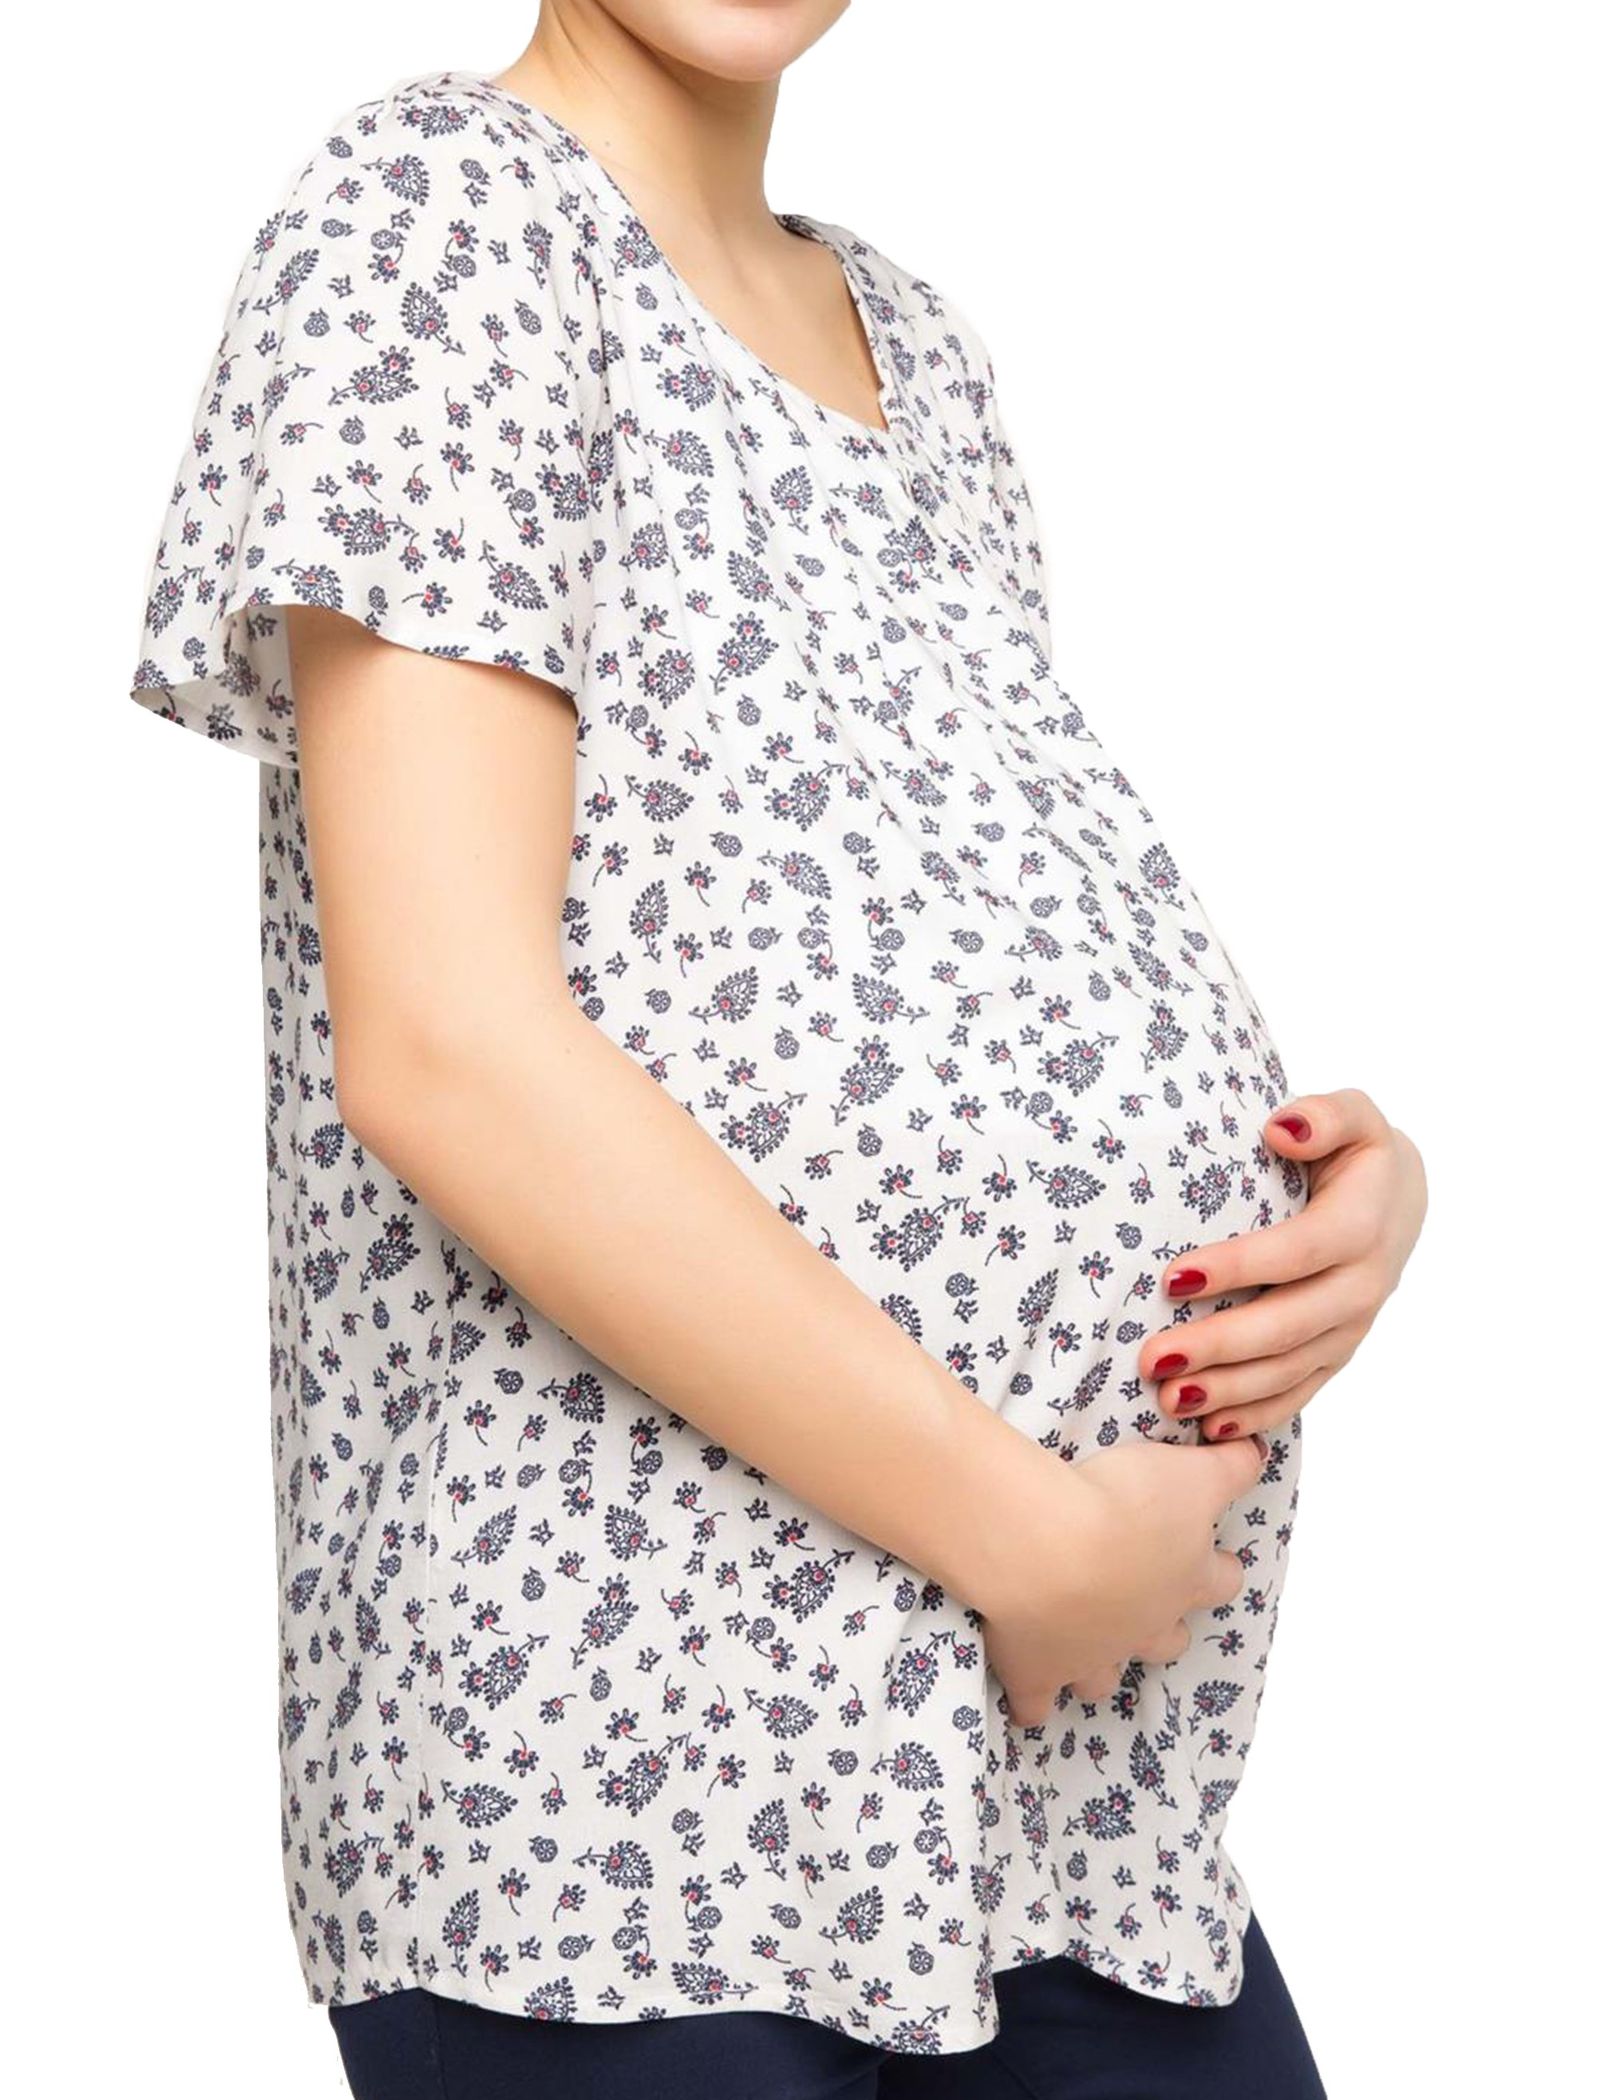 بلوز ویسکوز طرح دار بارداری - دفکتو - سفيد - 8